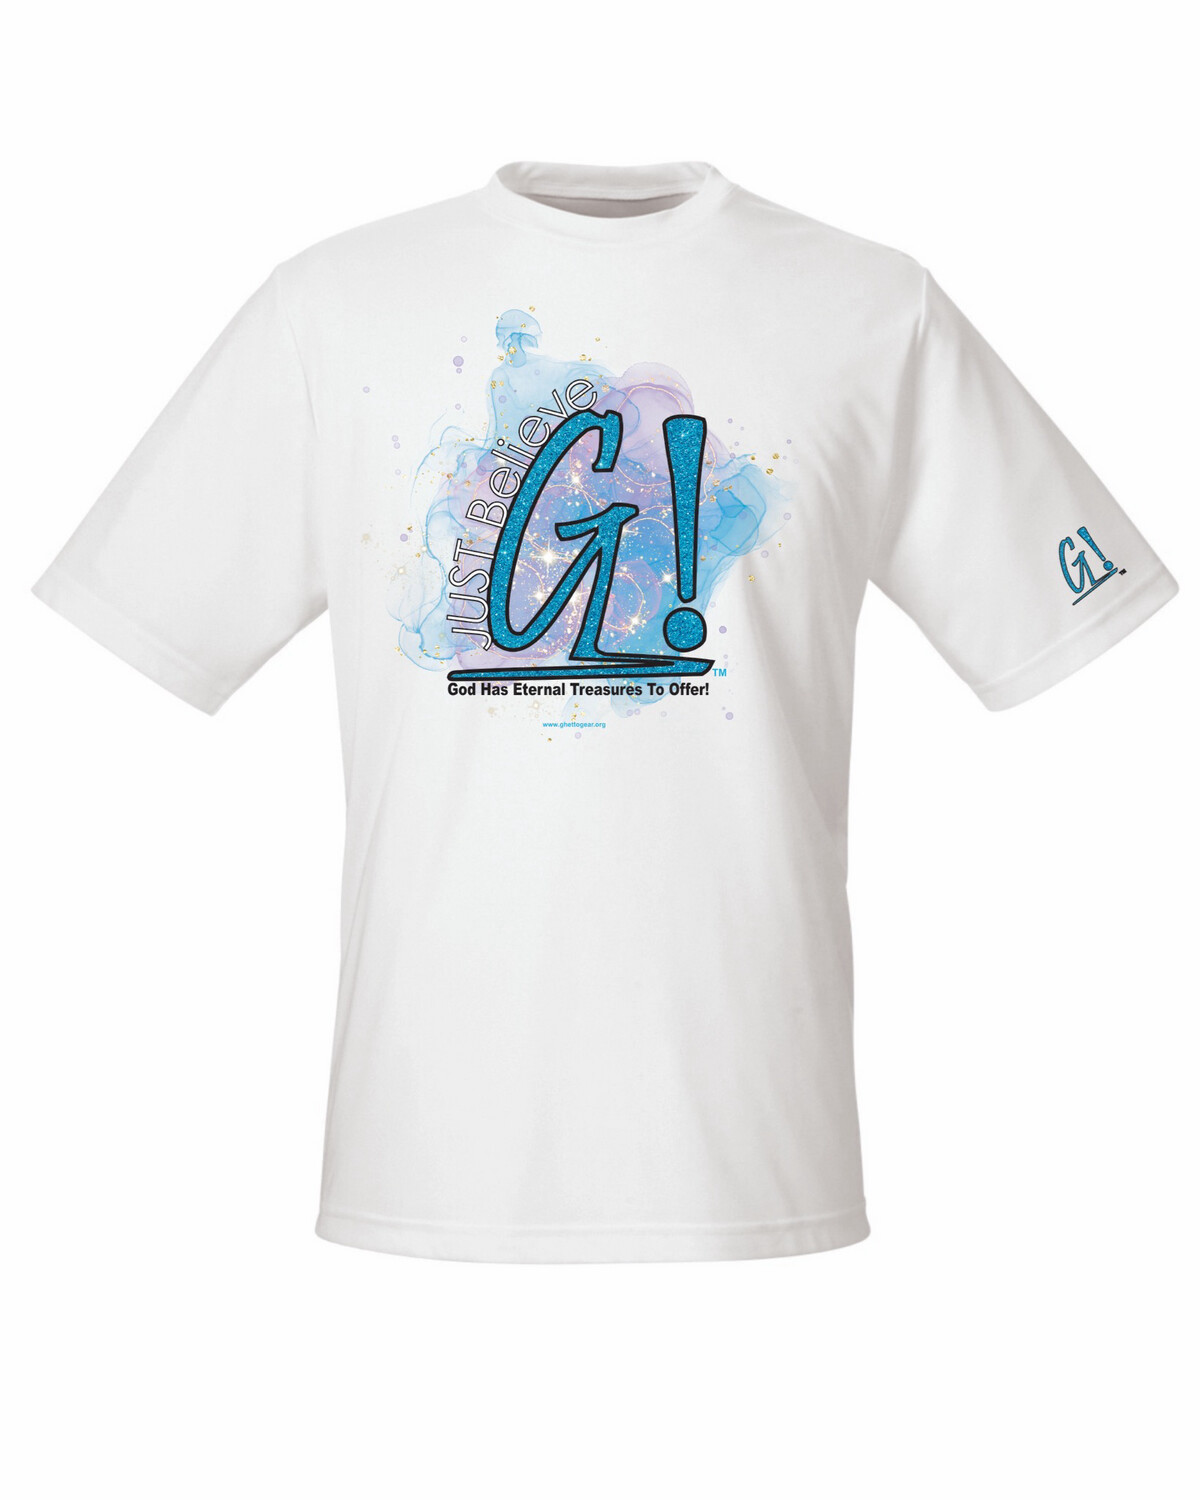 G! Just Believe T-Shirt